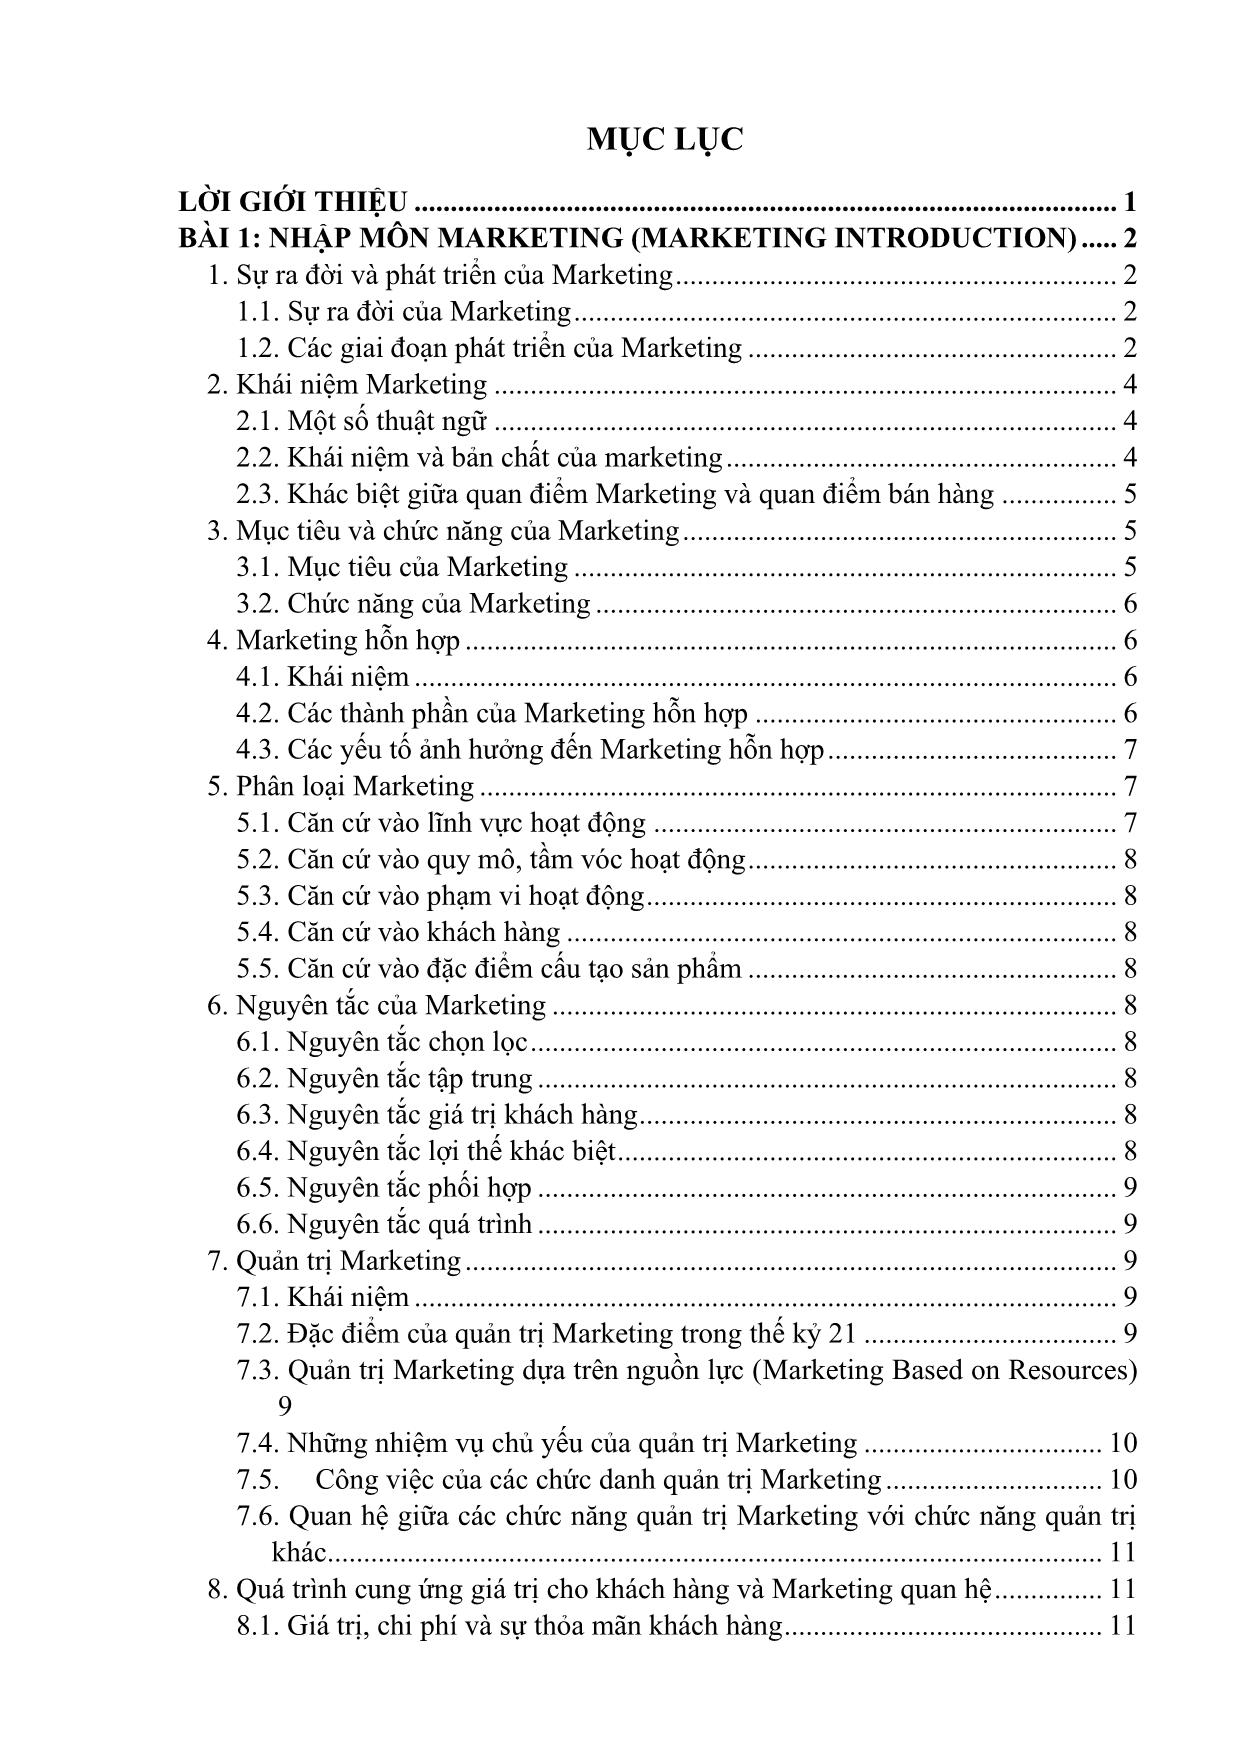 Giáo trình mô đun Marketing trang 5